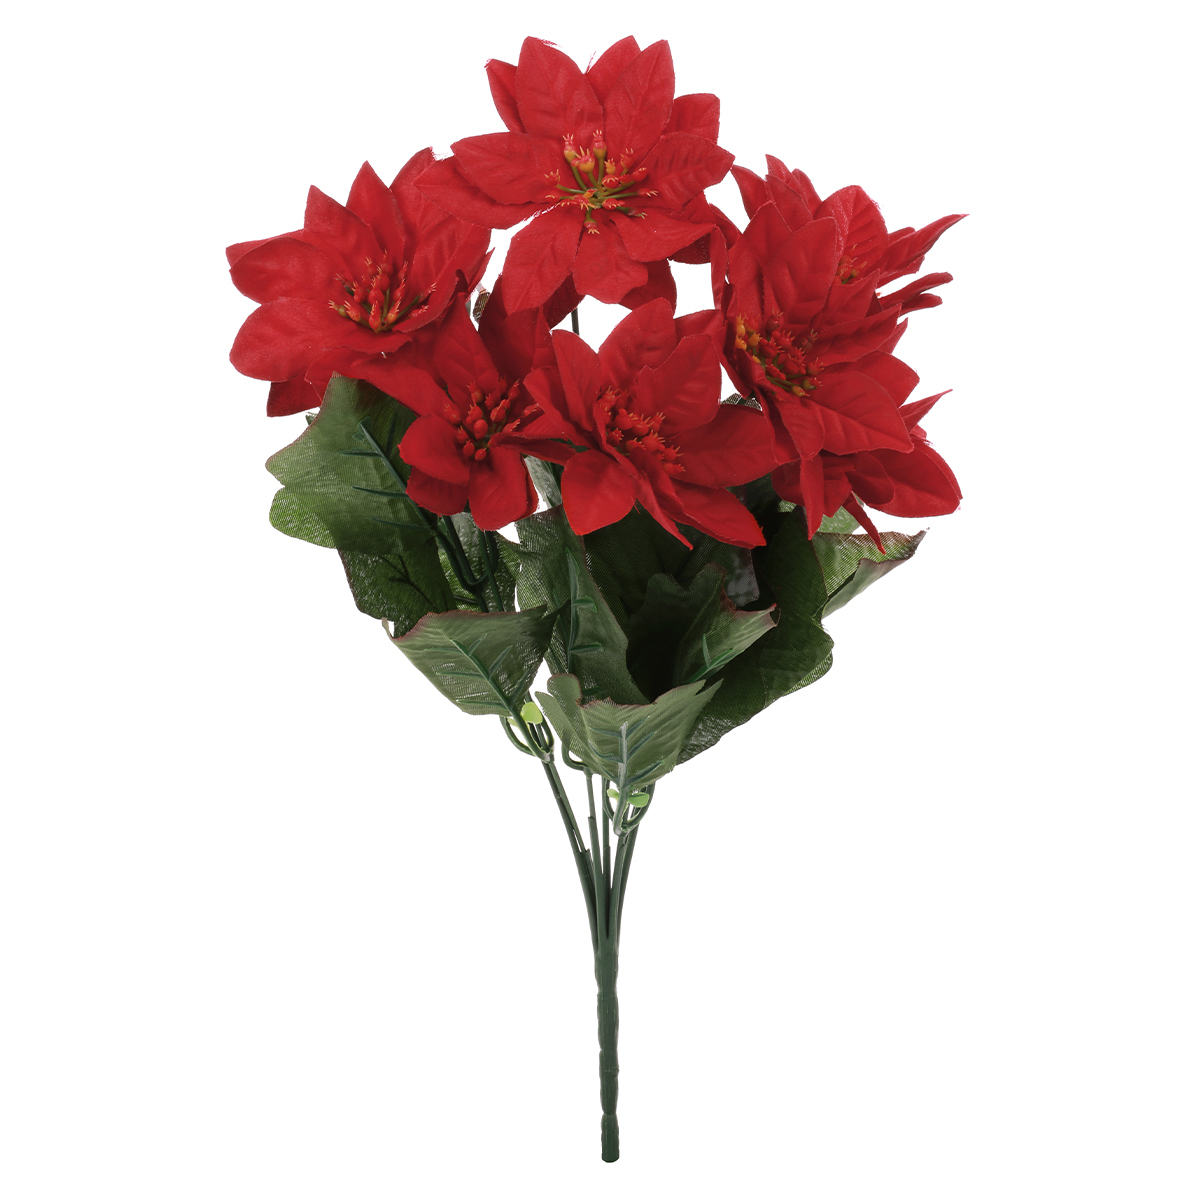 Puget vánočních růží, poinsécek červených (7hlav) . Květina umělá.